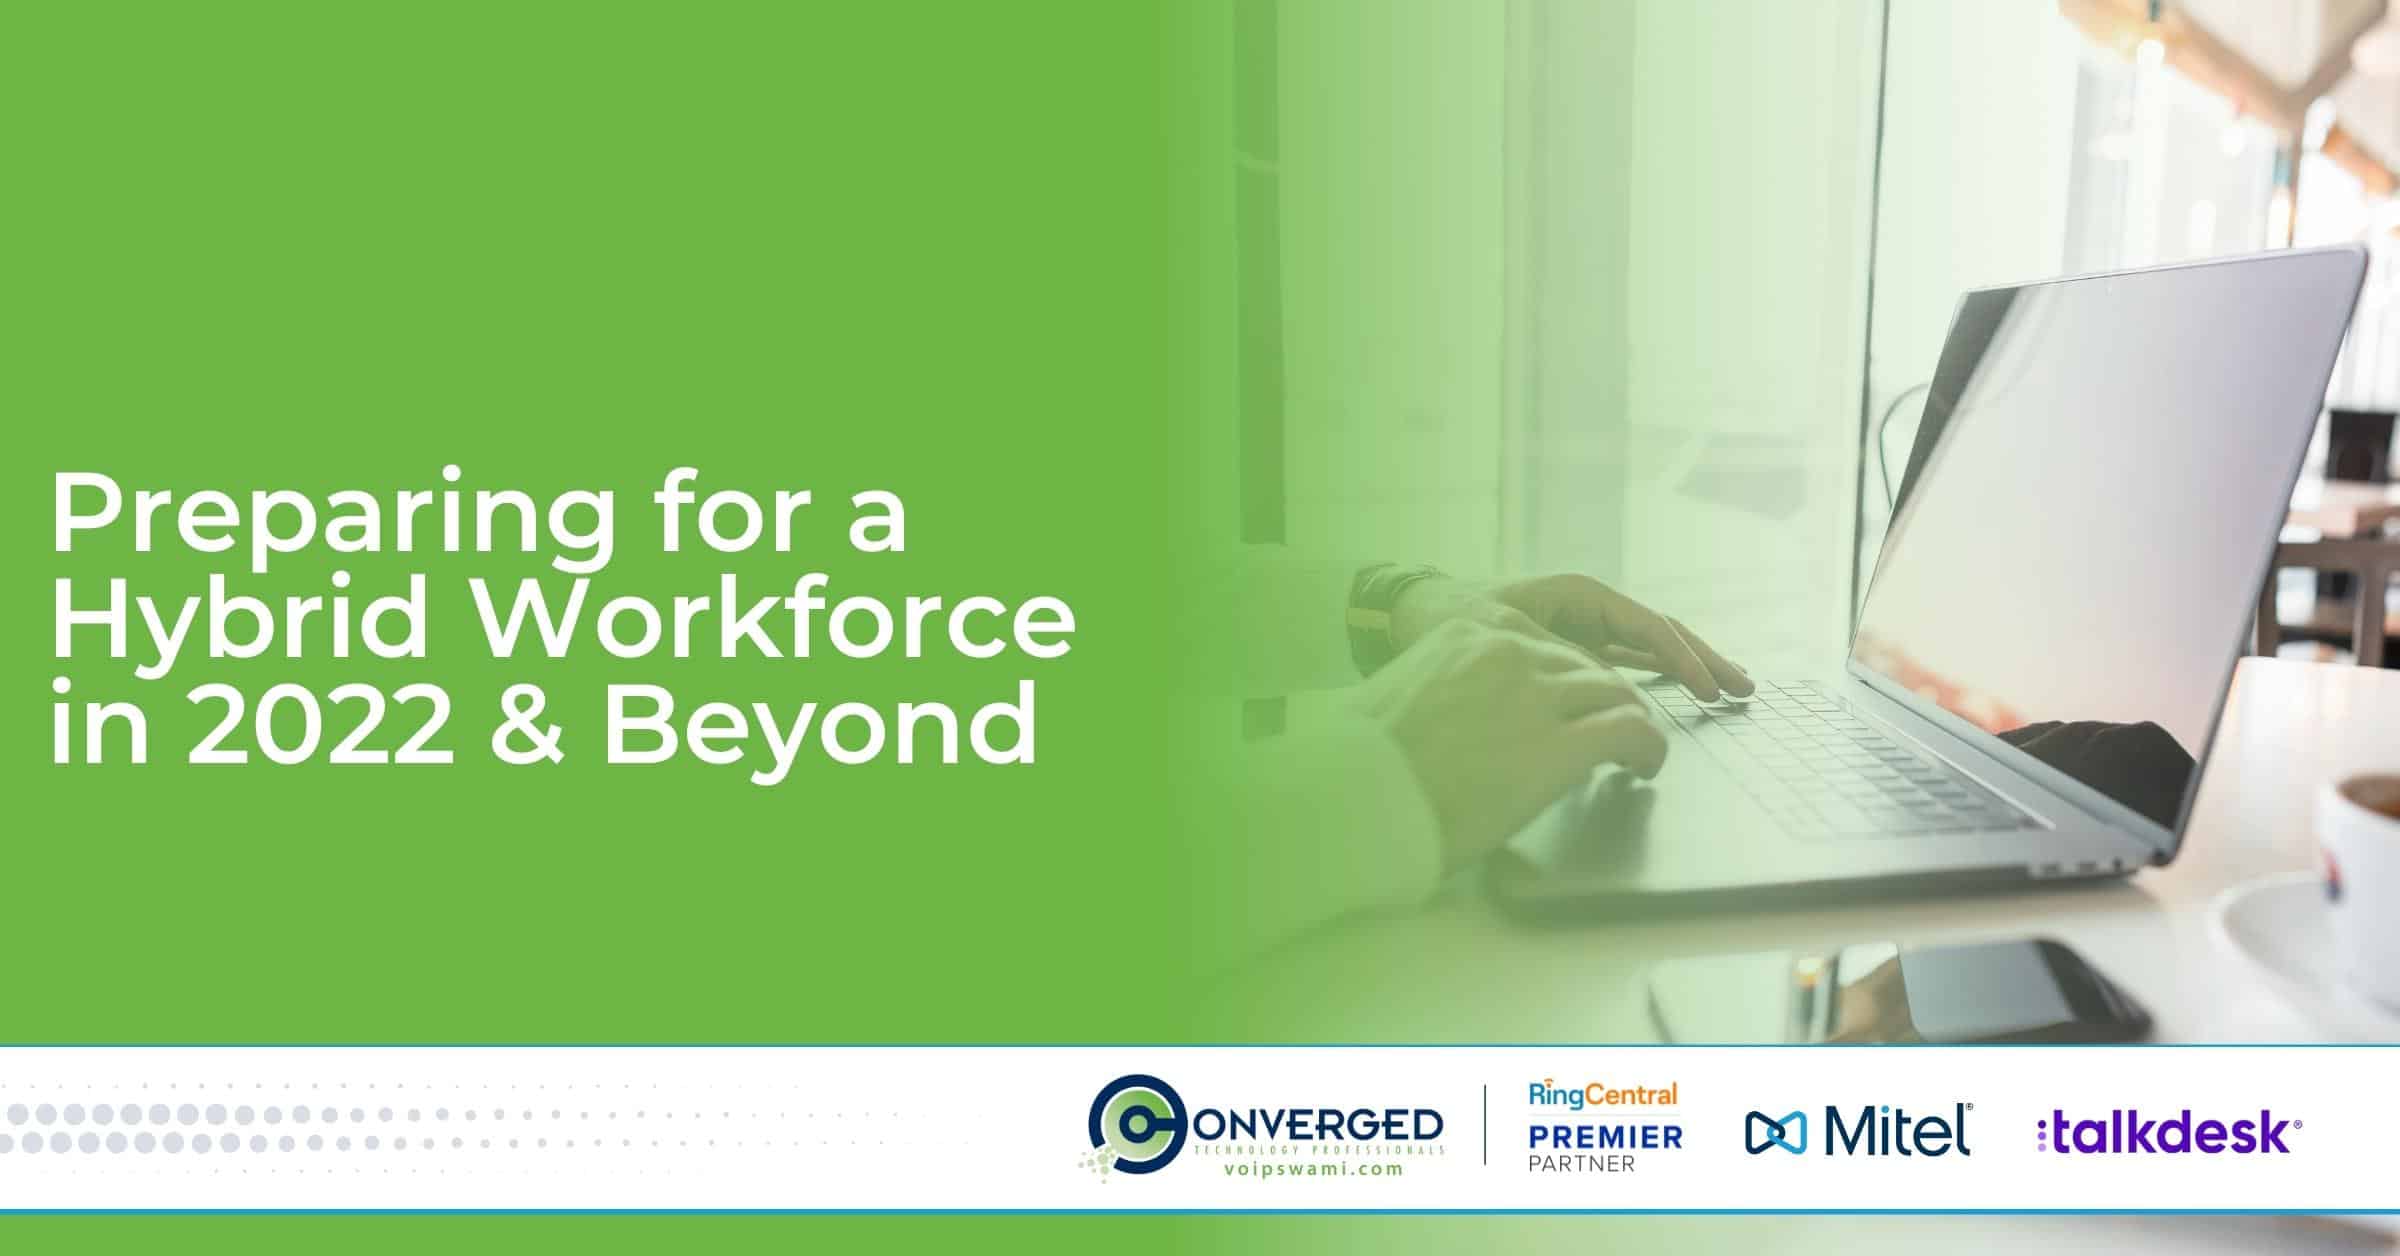 Preparing for a Hybrid Workforce in 2022 & Beyond